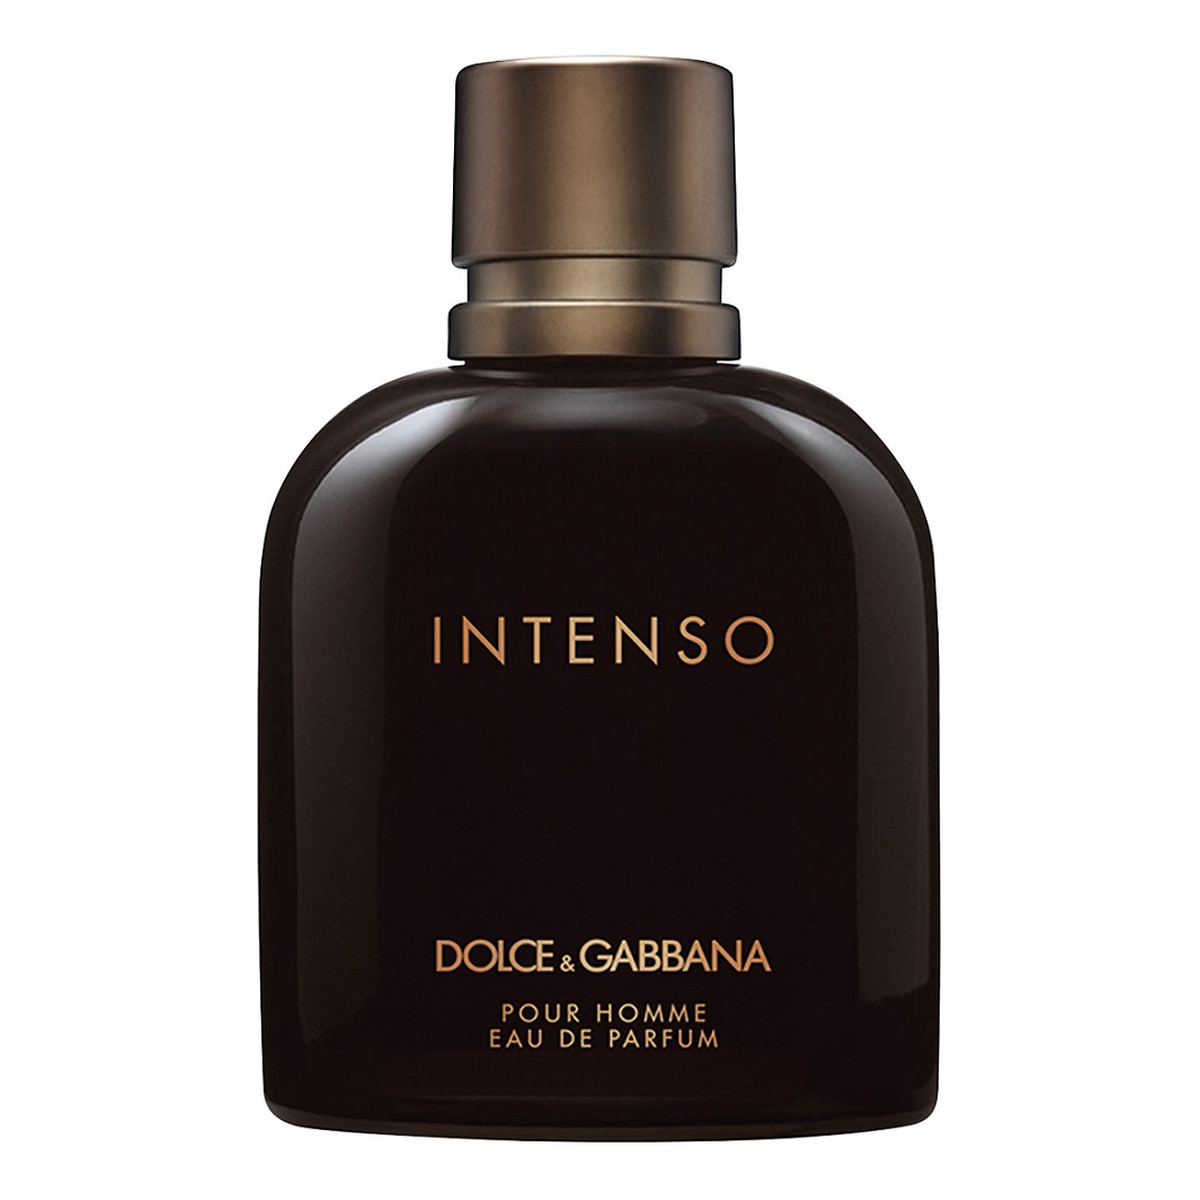 Dolce & Gabbana Intenso Pour Homme Woda perfumowana spray 125ml